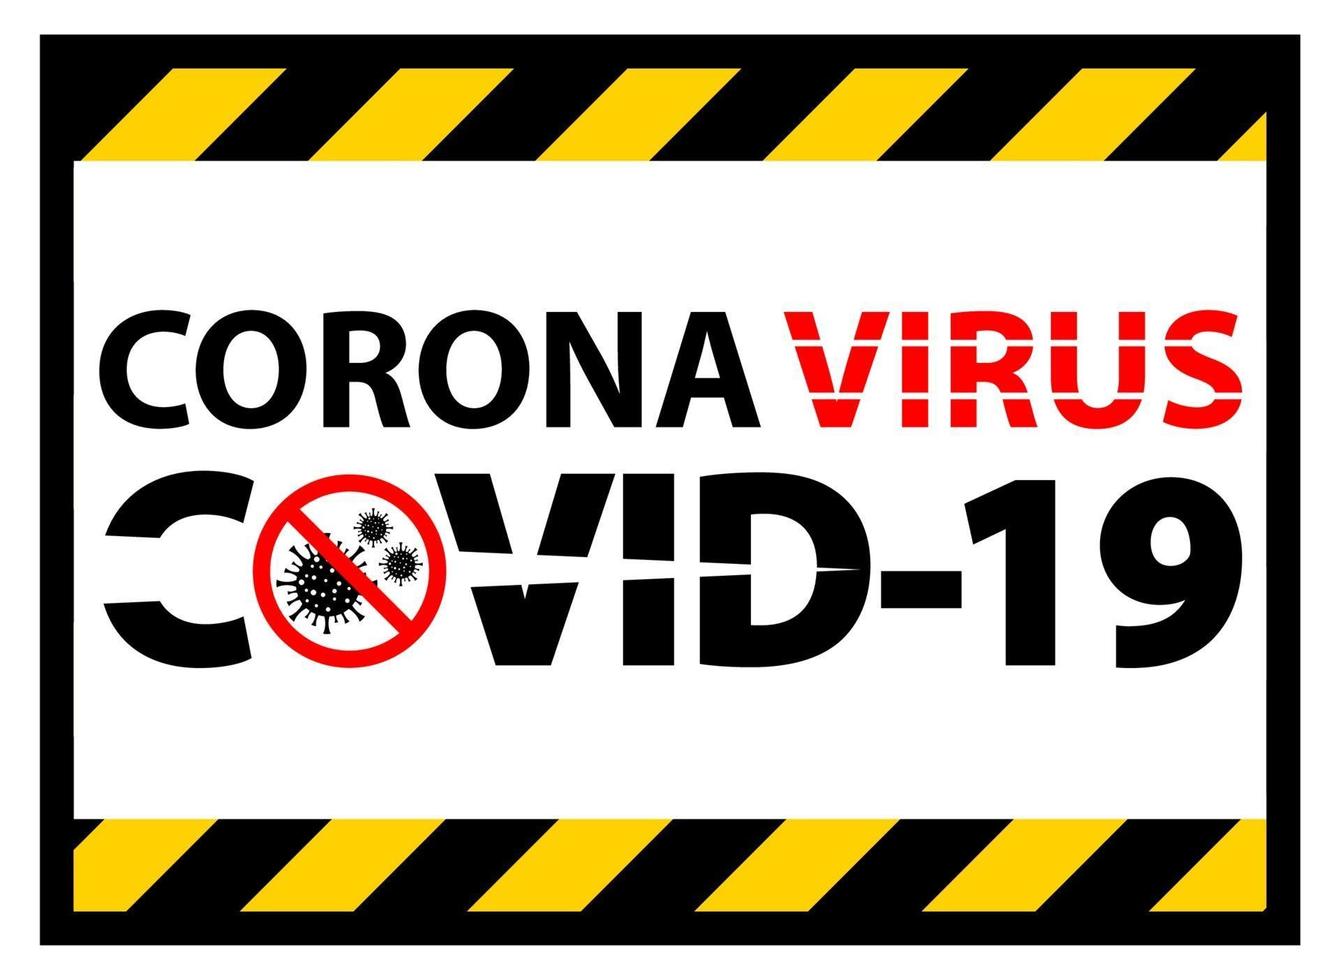 panneau d'avertissement, attention, épidémie de coronavirus covid 19 vecteur